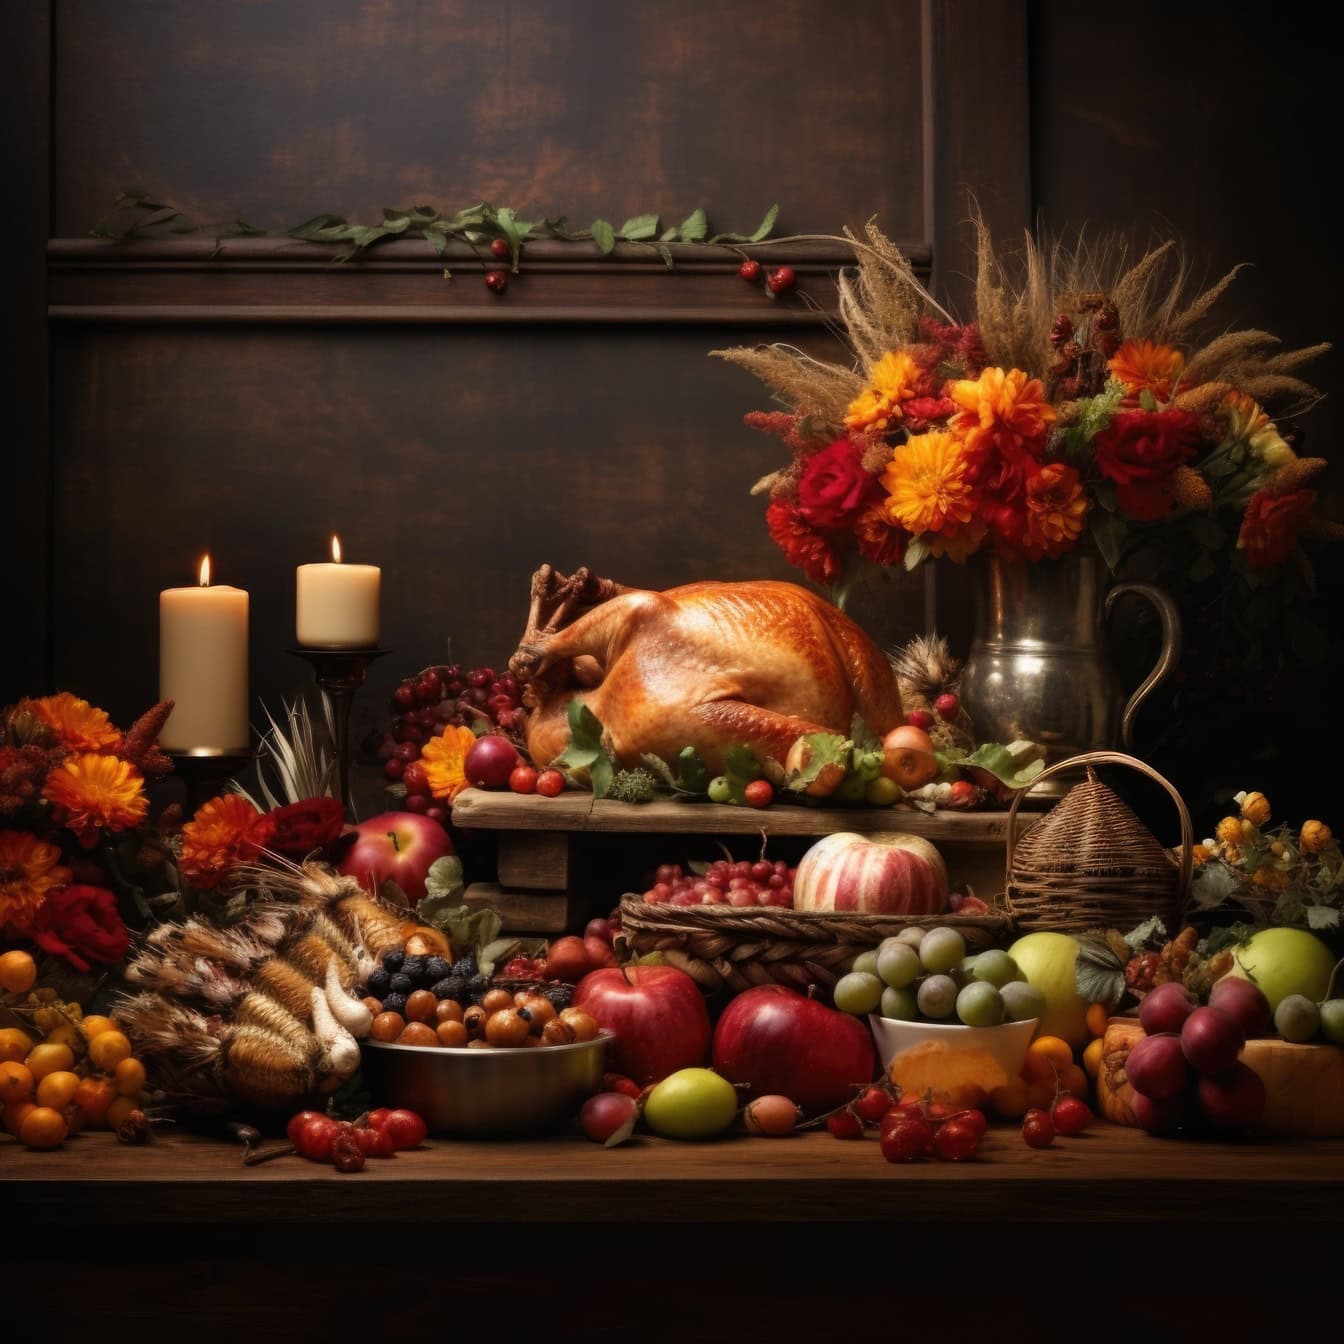 Tavolo da pranzo del Ringraziamento con tacchino arrosto e vari frutti e fiori in vaso, un modello ideale per la composizione di nature morte